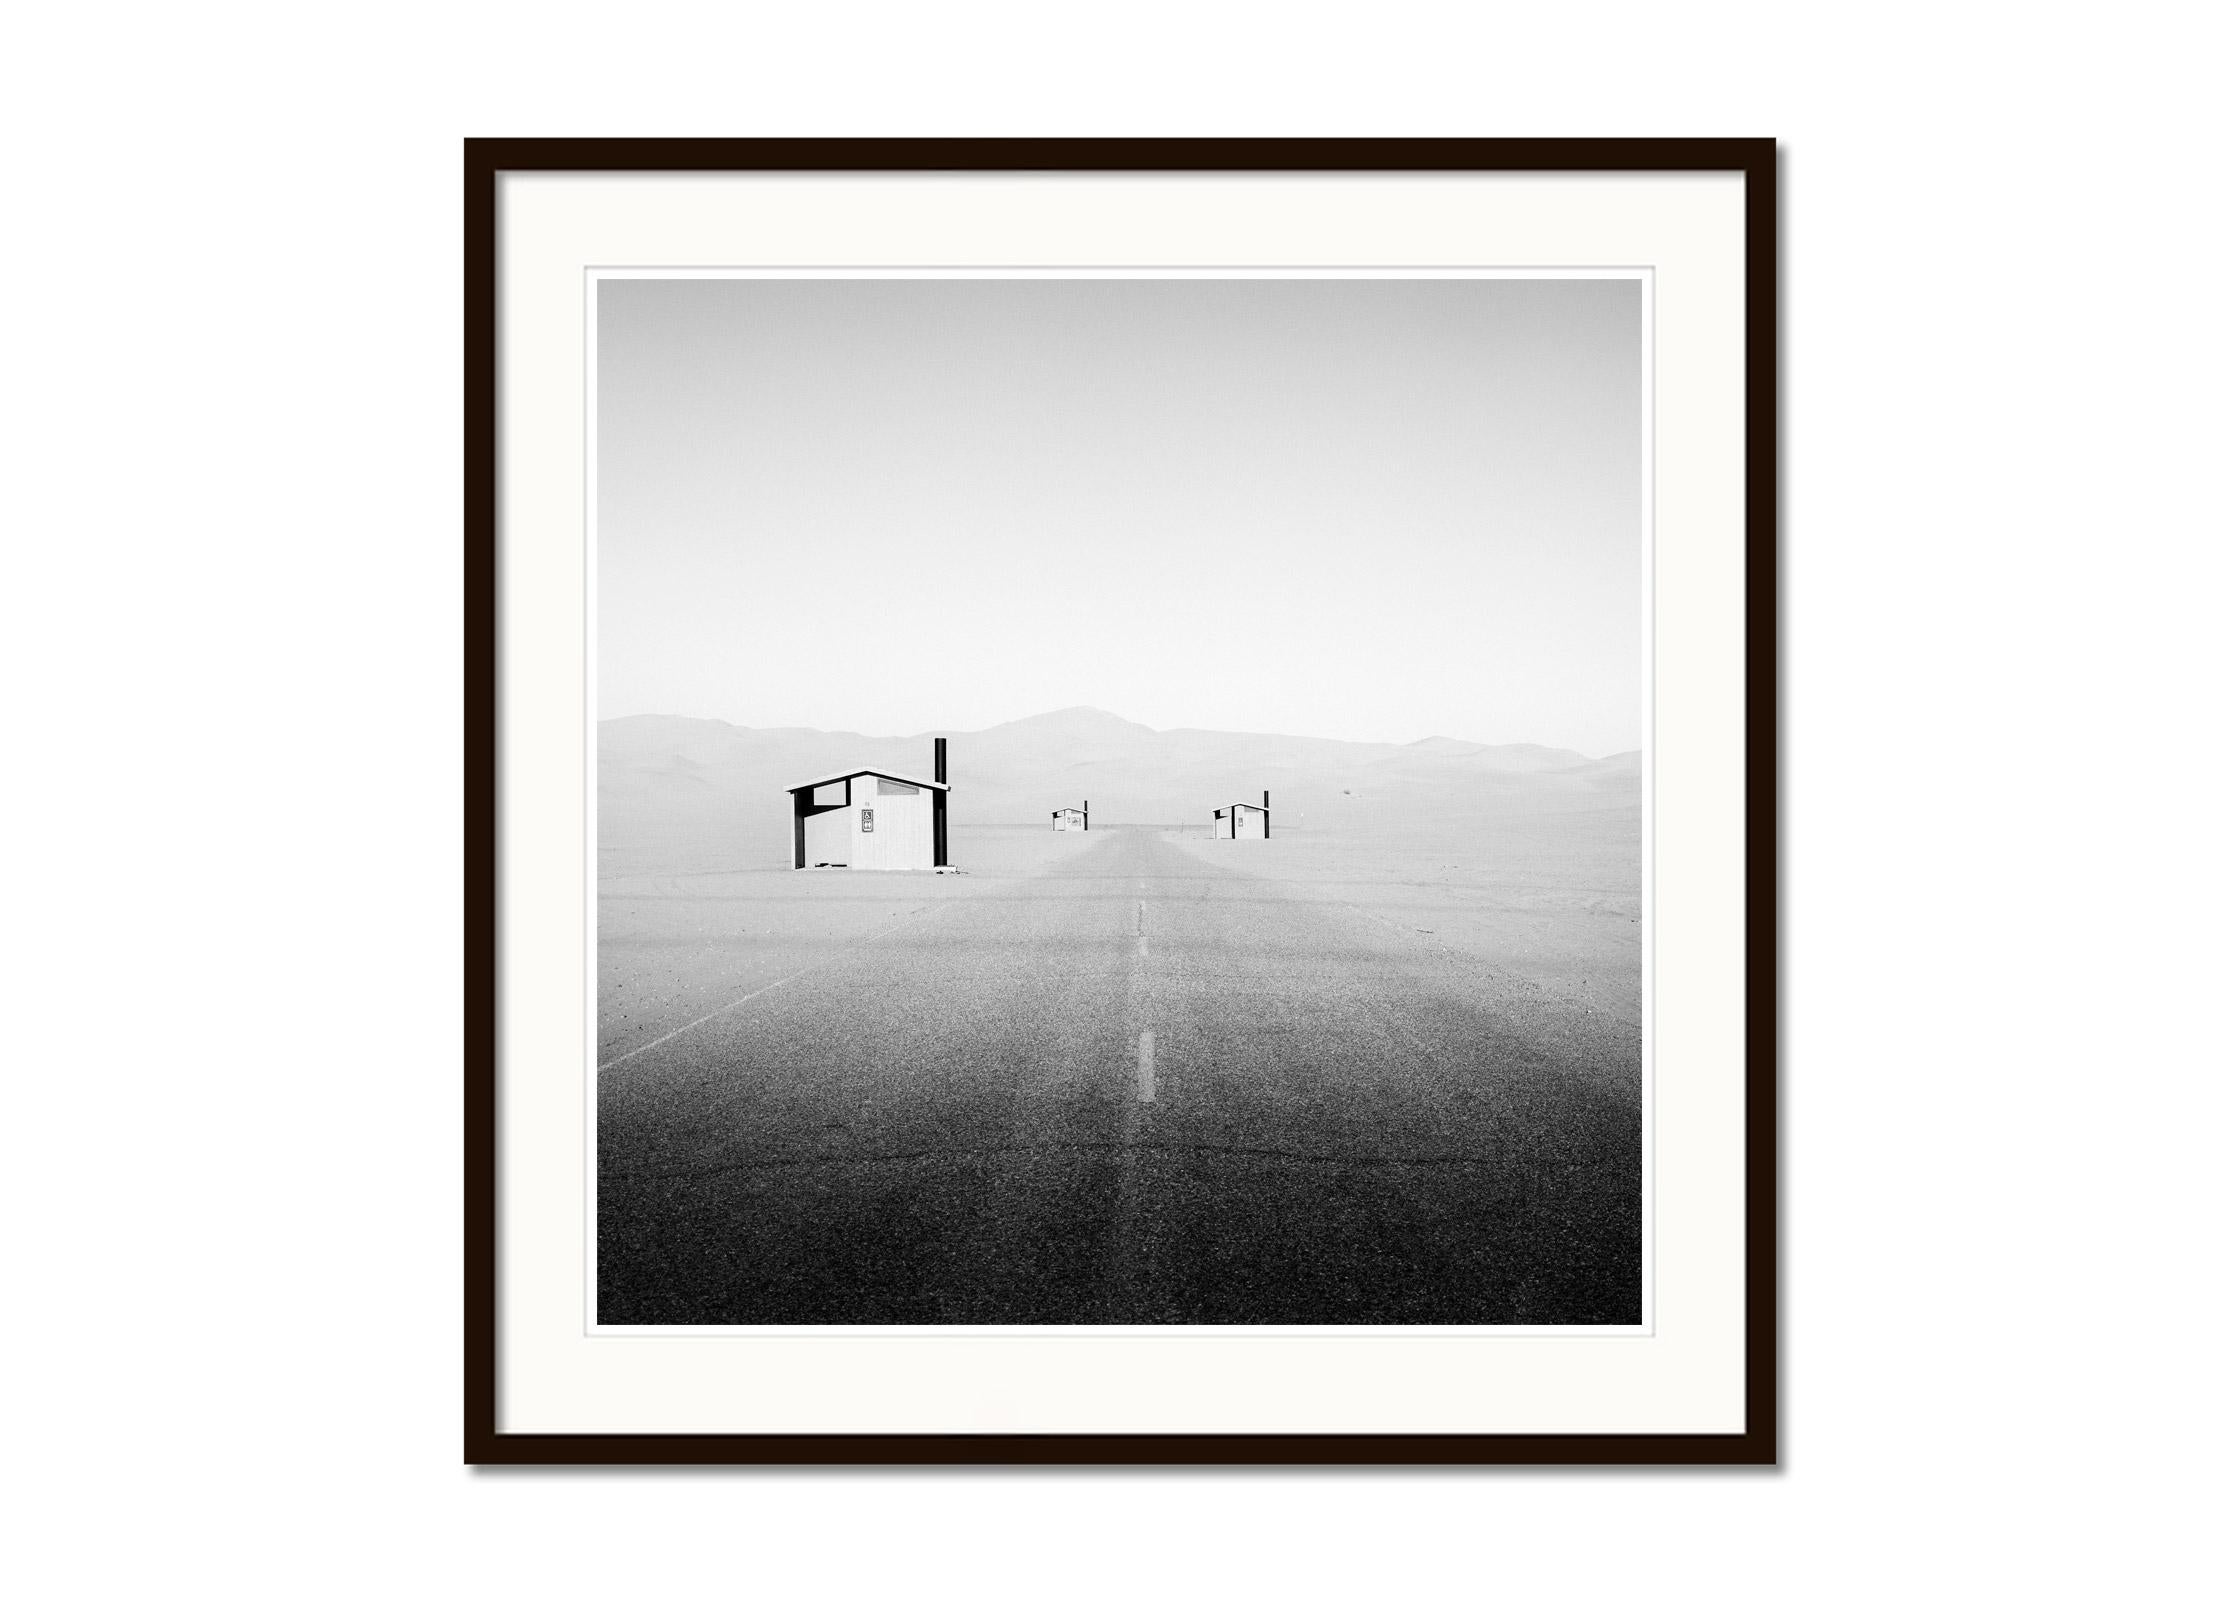 Mexikanische Grenze, Camping, Arizona, USA, Schwarz-Weiß-Landschaftsfotografie (Grau), Landscape Photograph, von Gerald Berghammer